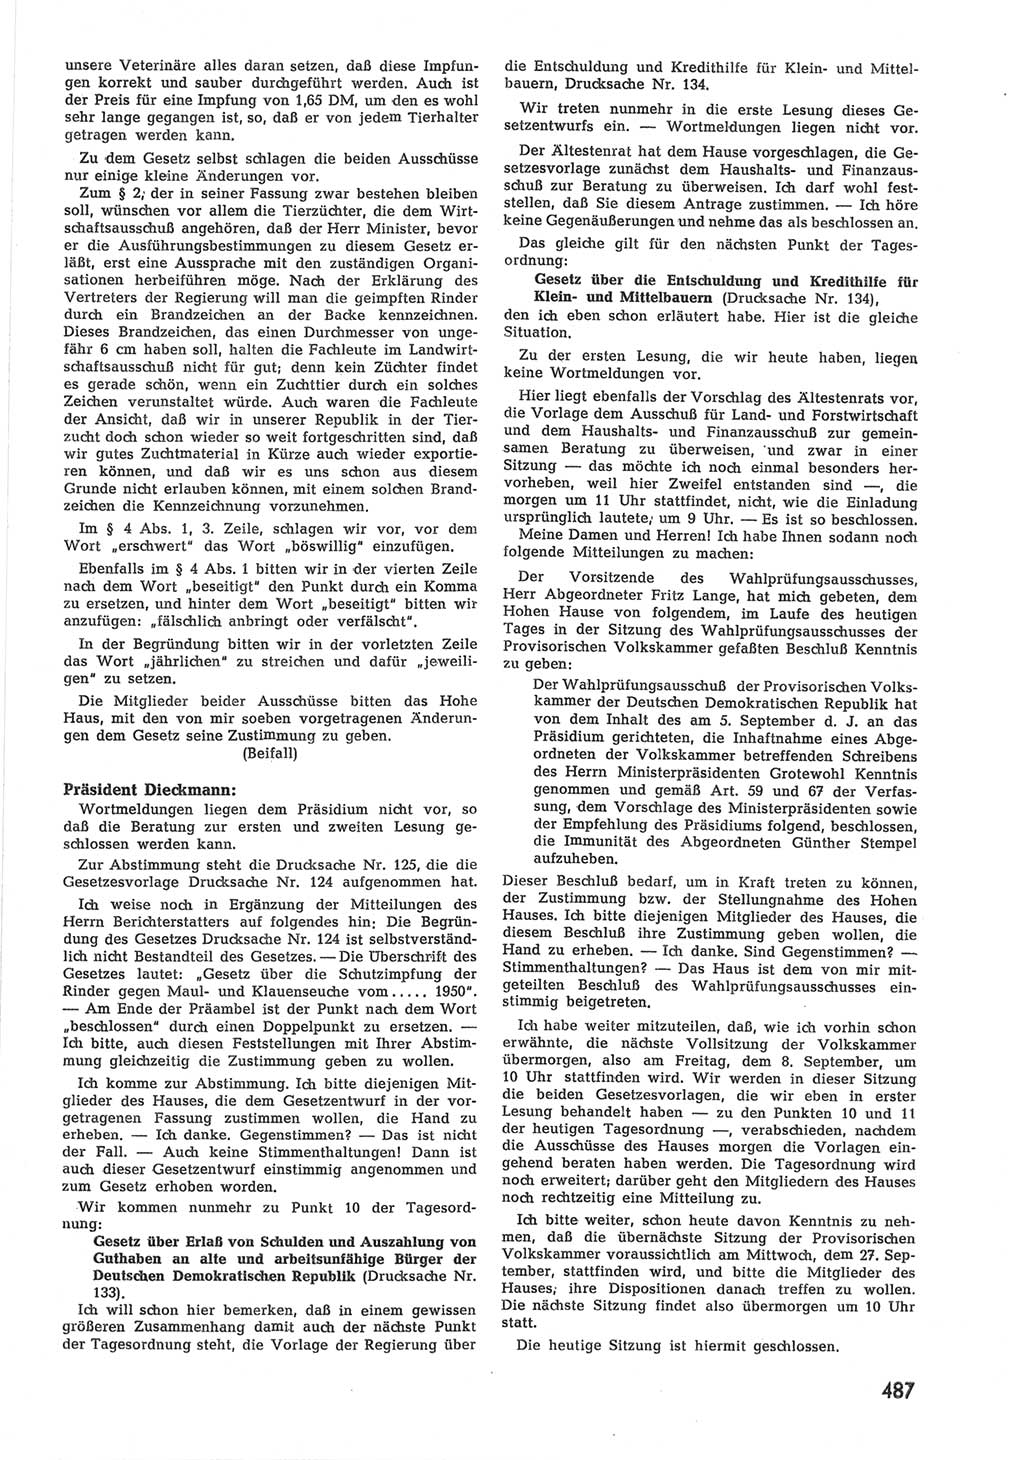 Provisorische Volkskammer (VK) der Deutschen Demokratischen Republik (DDR) 1949-1950, Dokument 505 (Prov. VK DDR 1949-1950, Dok. 505)